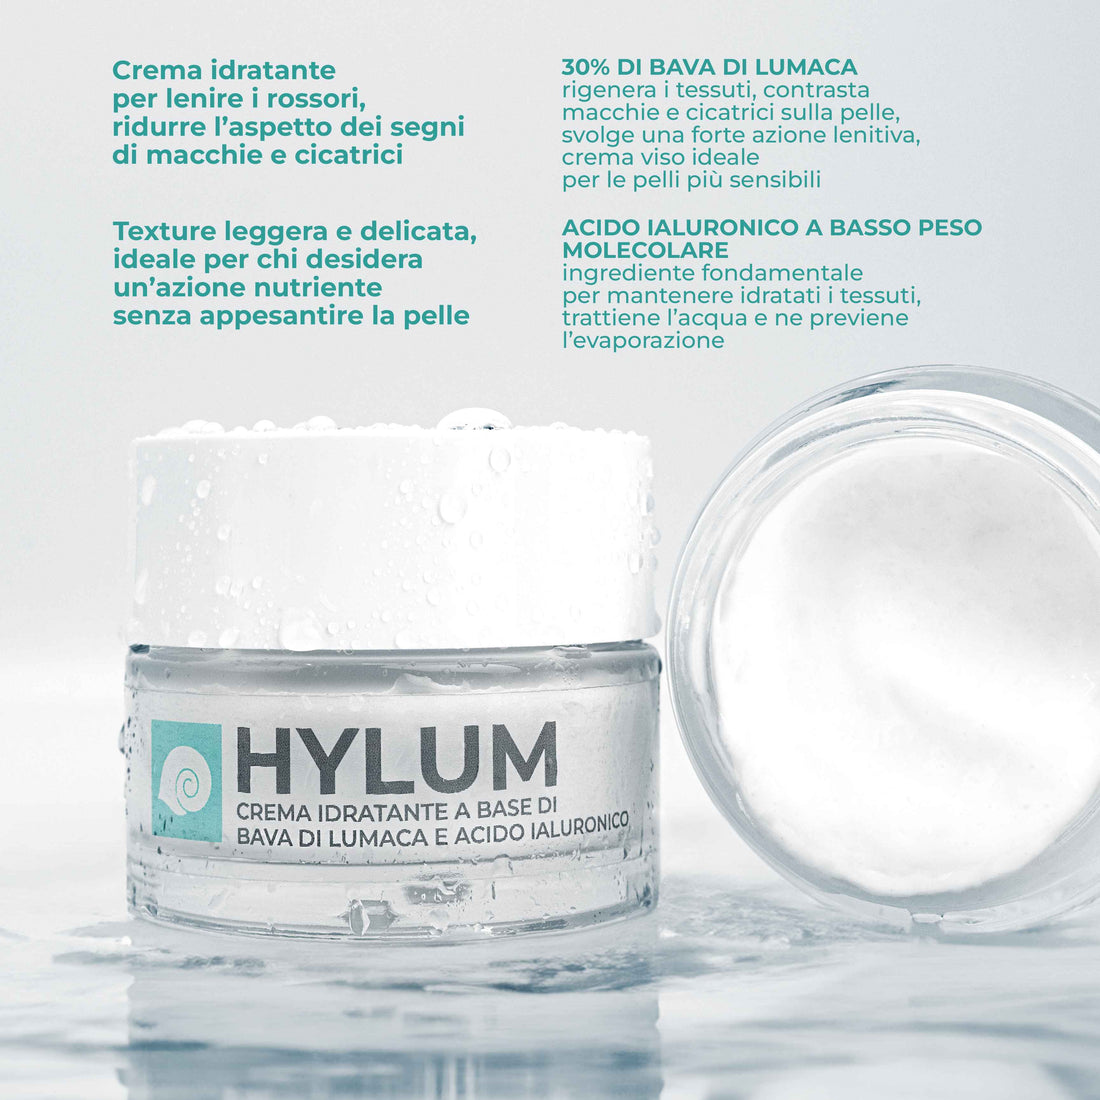 Hylum - face cream